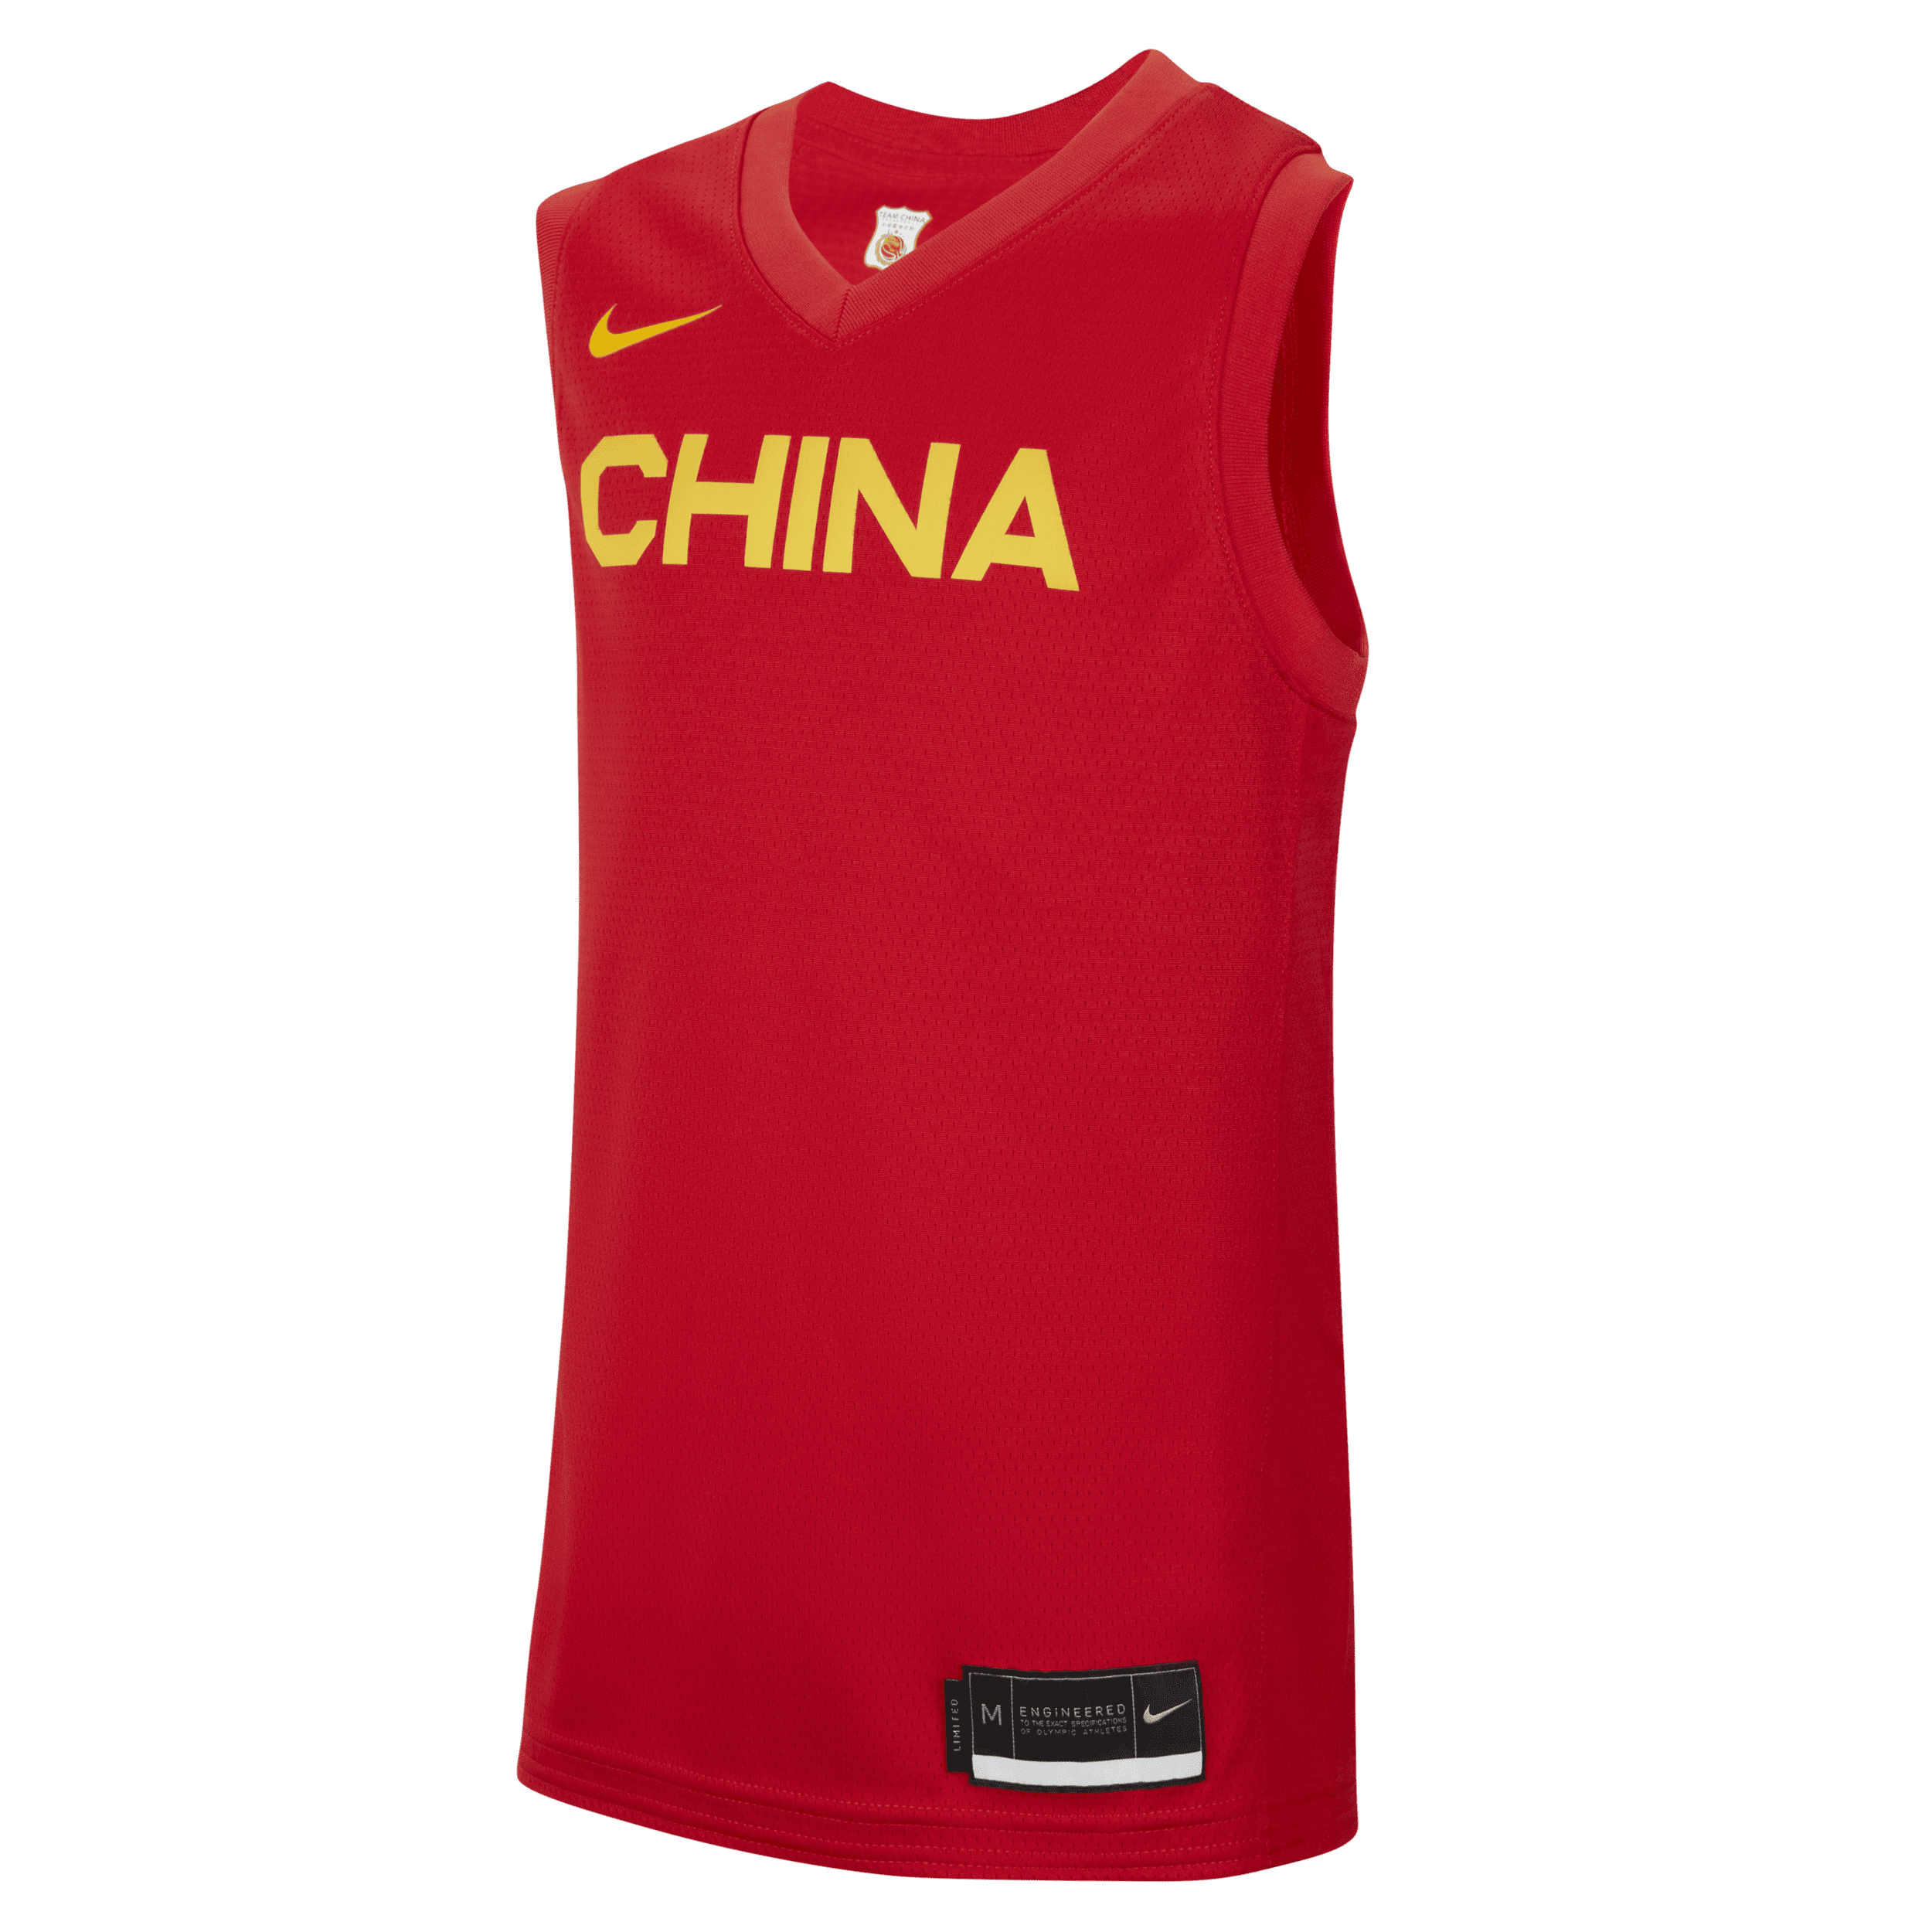 China (asfalto) Camiseta de baloncesto Nike - Niño/a - Rojo